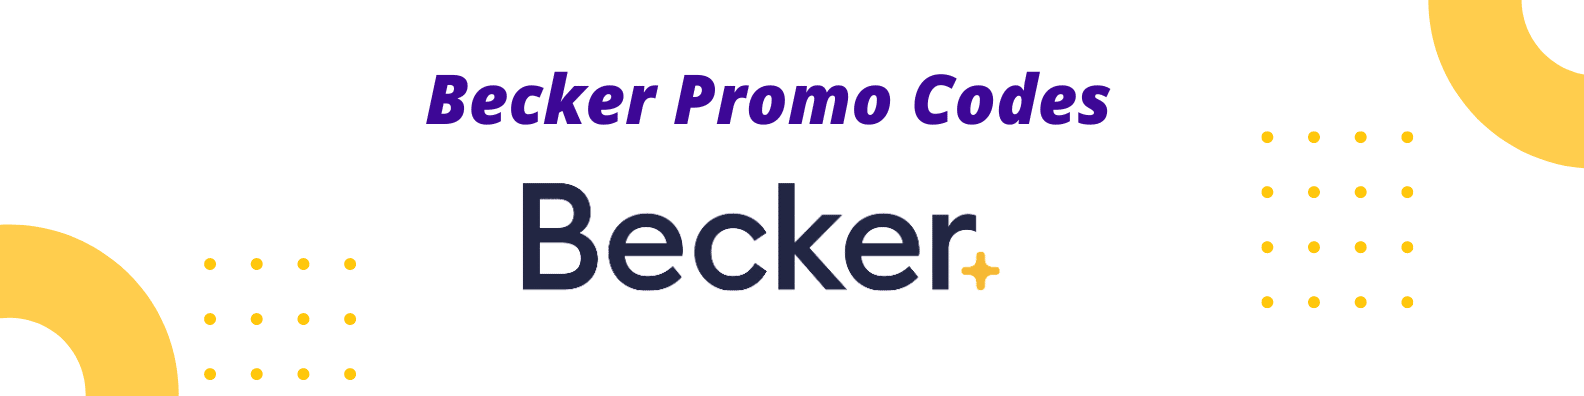 Becker Promo Codes & Discounts